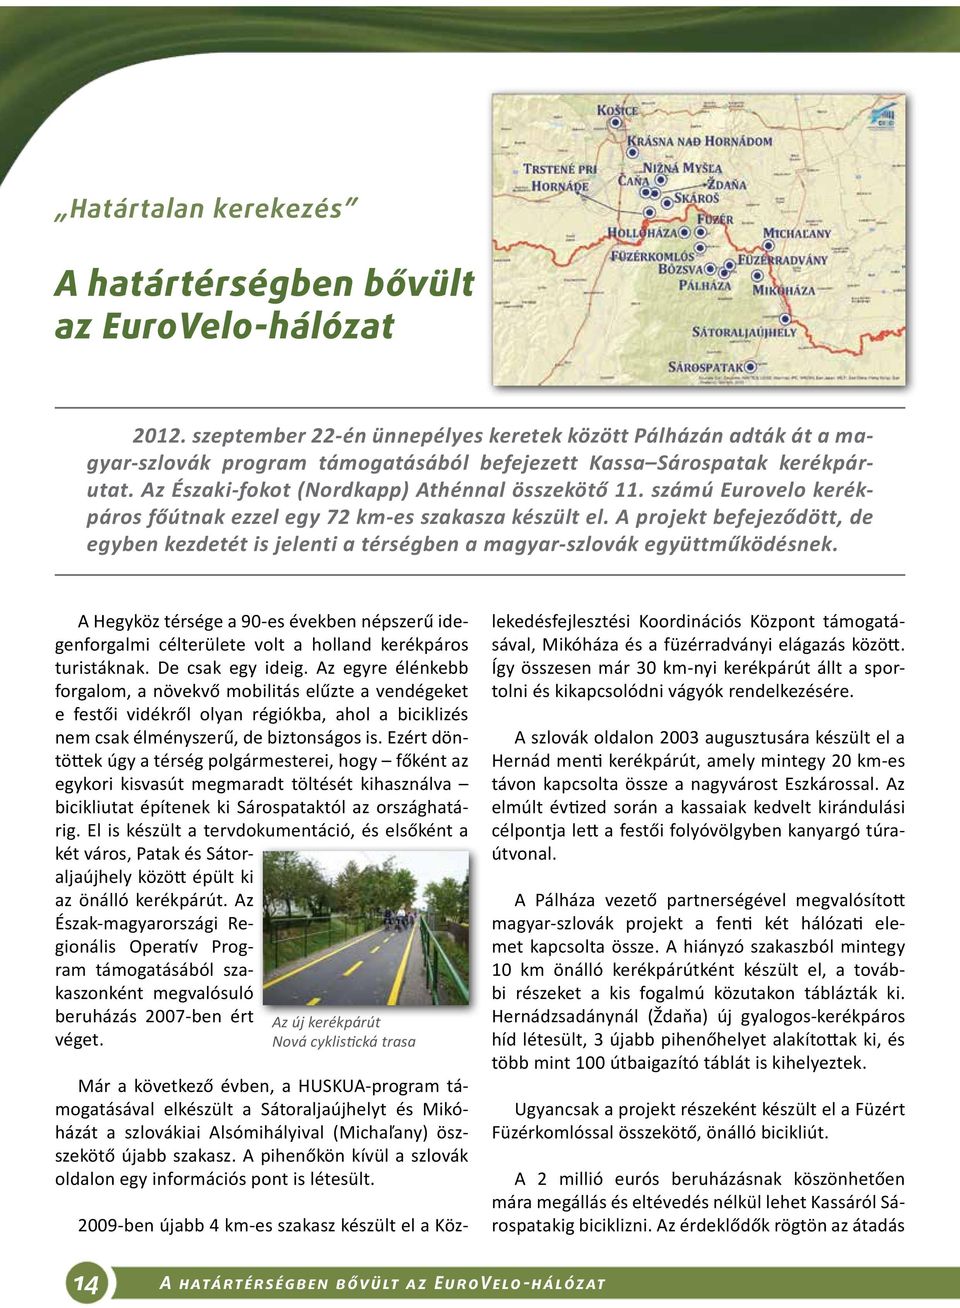 számú Eurovelo kerékpáros főútnak ezzel egy 72 km-es szakasza készült el. A projekt befejeződött, de egyben kezdetét is jelenti a térségben a magyar-szlovák együttműködésnek.